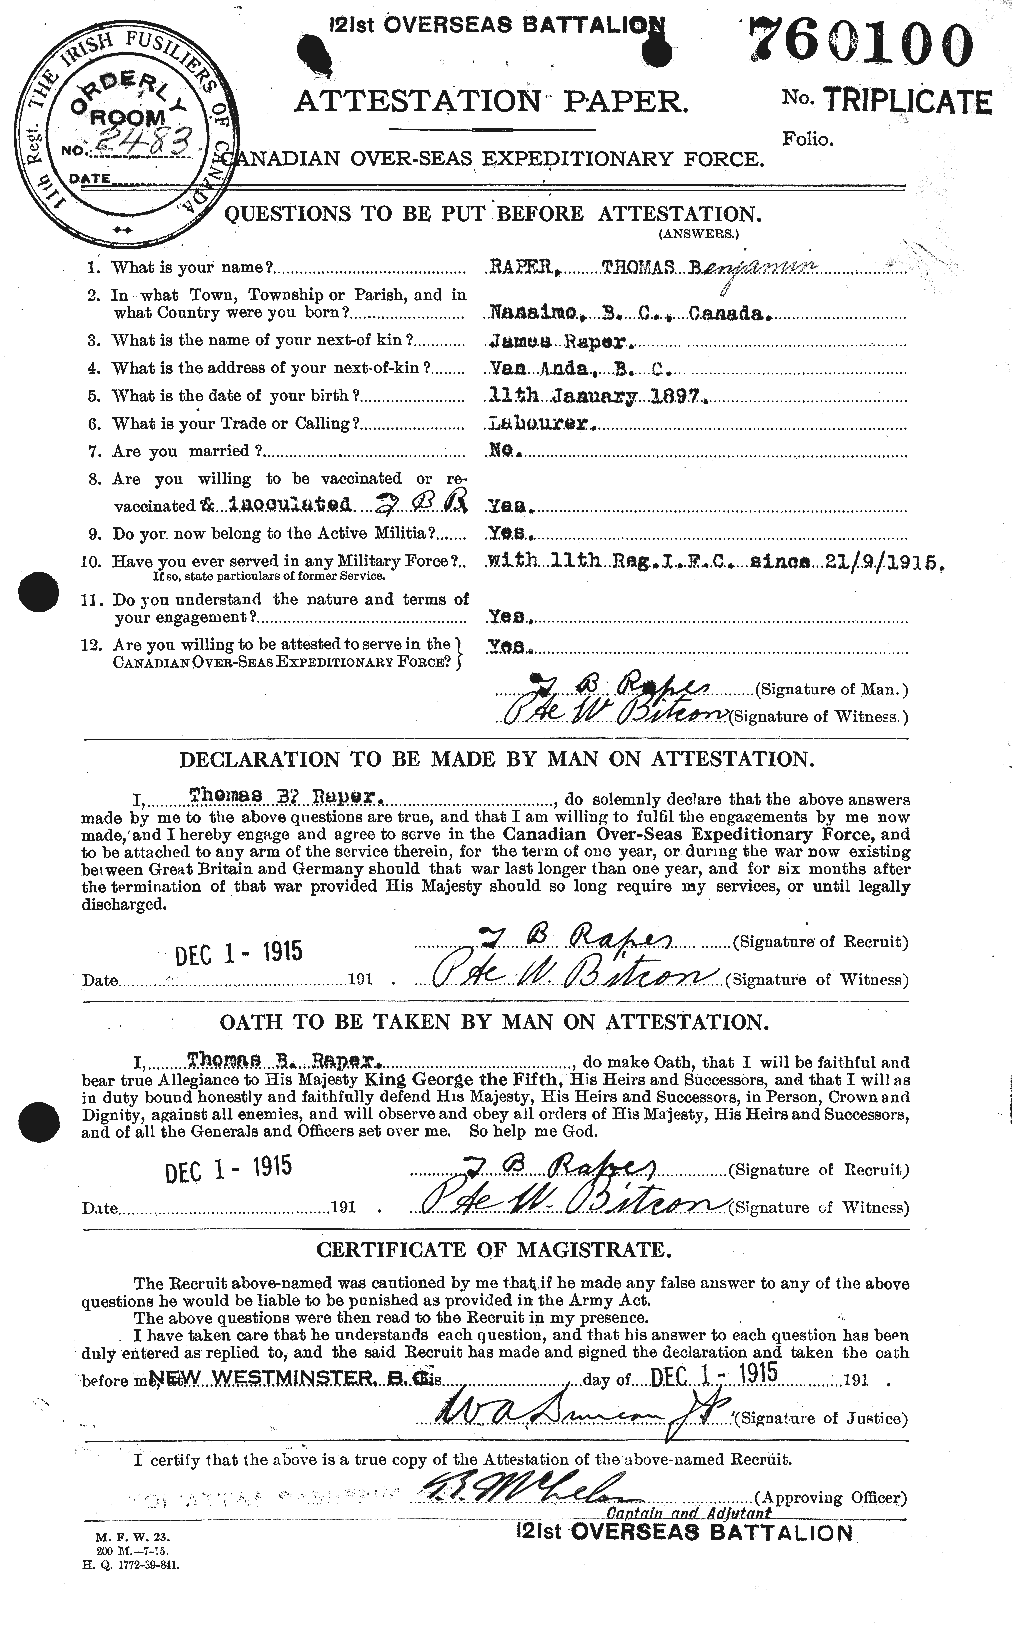 Dossiers du Personnel de la Première Guerre mondiale - CEC 594961a